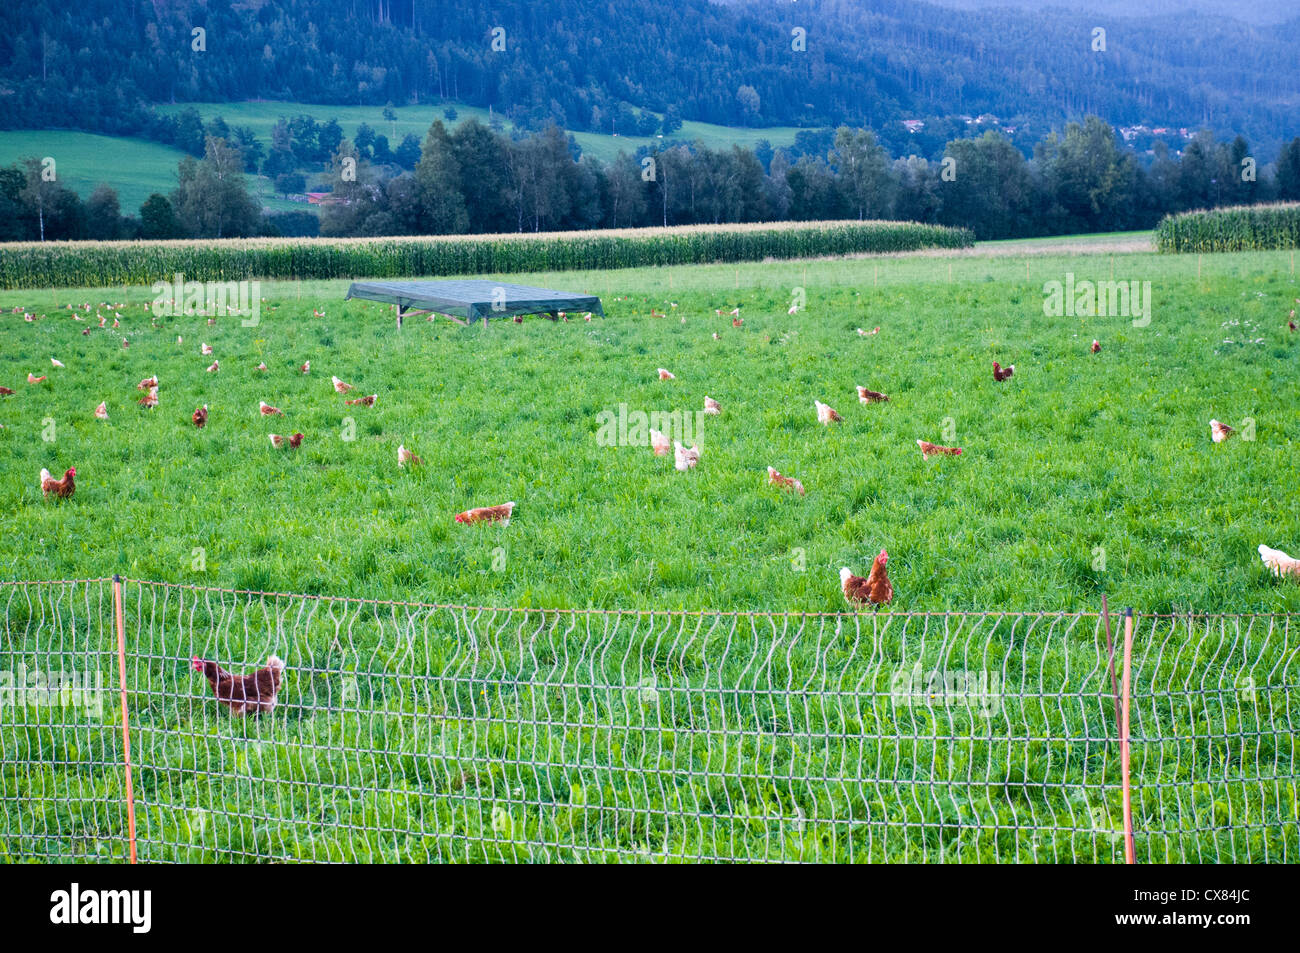 Troupeau de poules domestiques (Gallus sp.) se nourrir dans une cour de ferme photographiés dans le Tyrol Autriche Banque D'Images